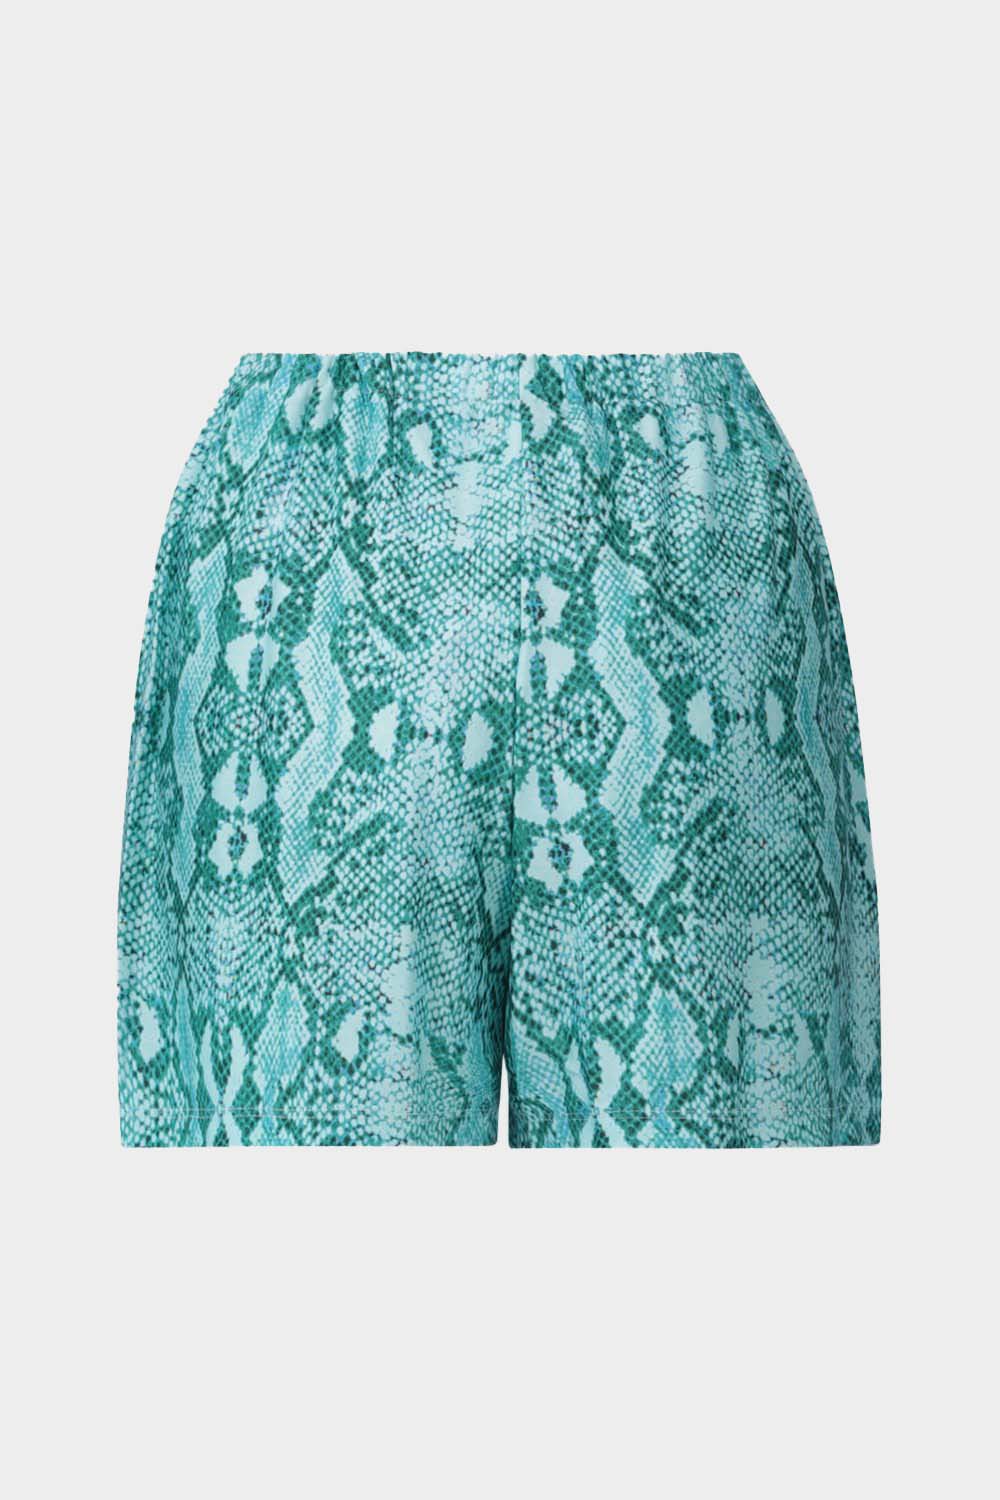 מכנסיים קצרים לנשים הדפס נחש LIU JO Vendome online | ונדום .